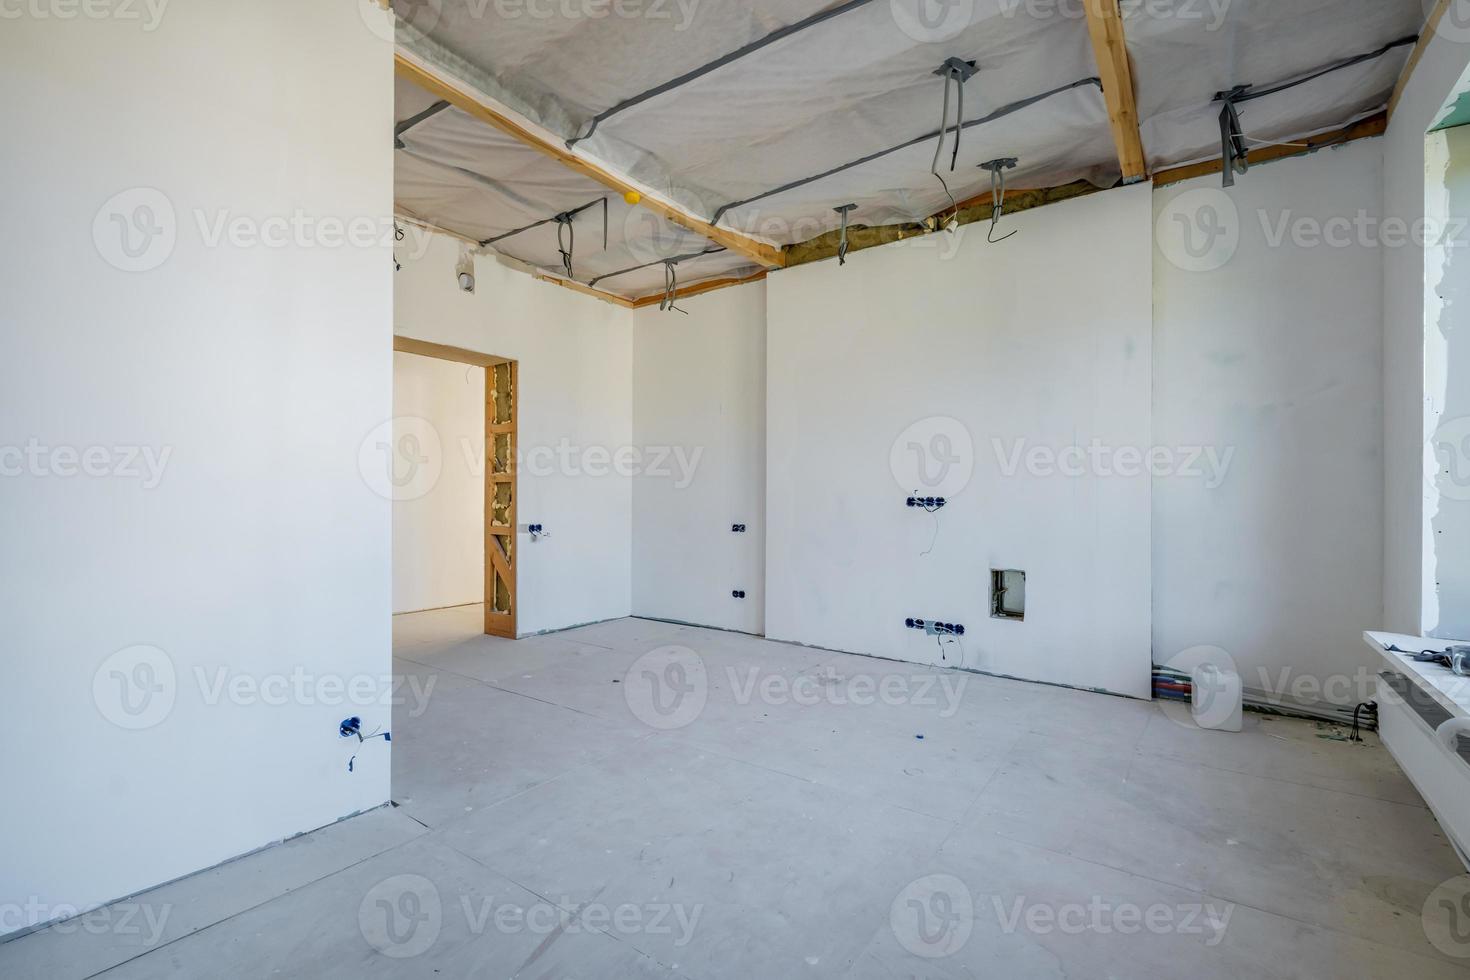 chambre vide non meublée avec un minimum de réparations préparatoires. intérieur avec murs blancs et cloisons sèches photo